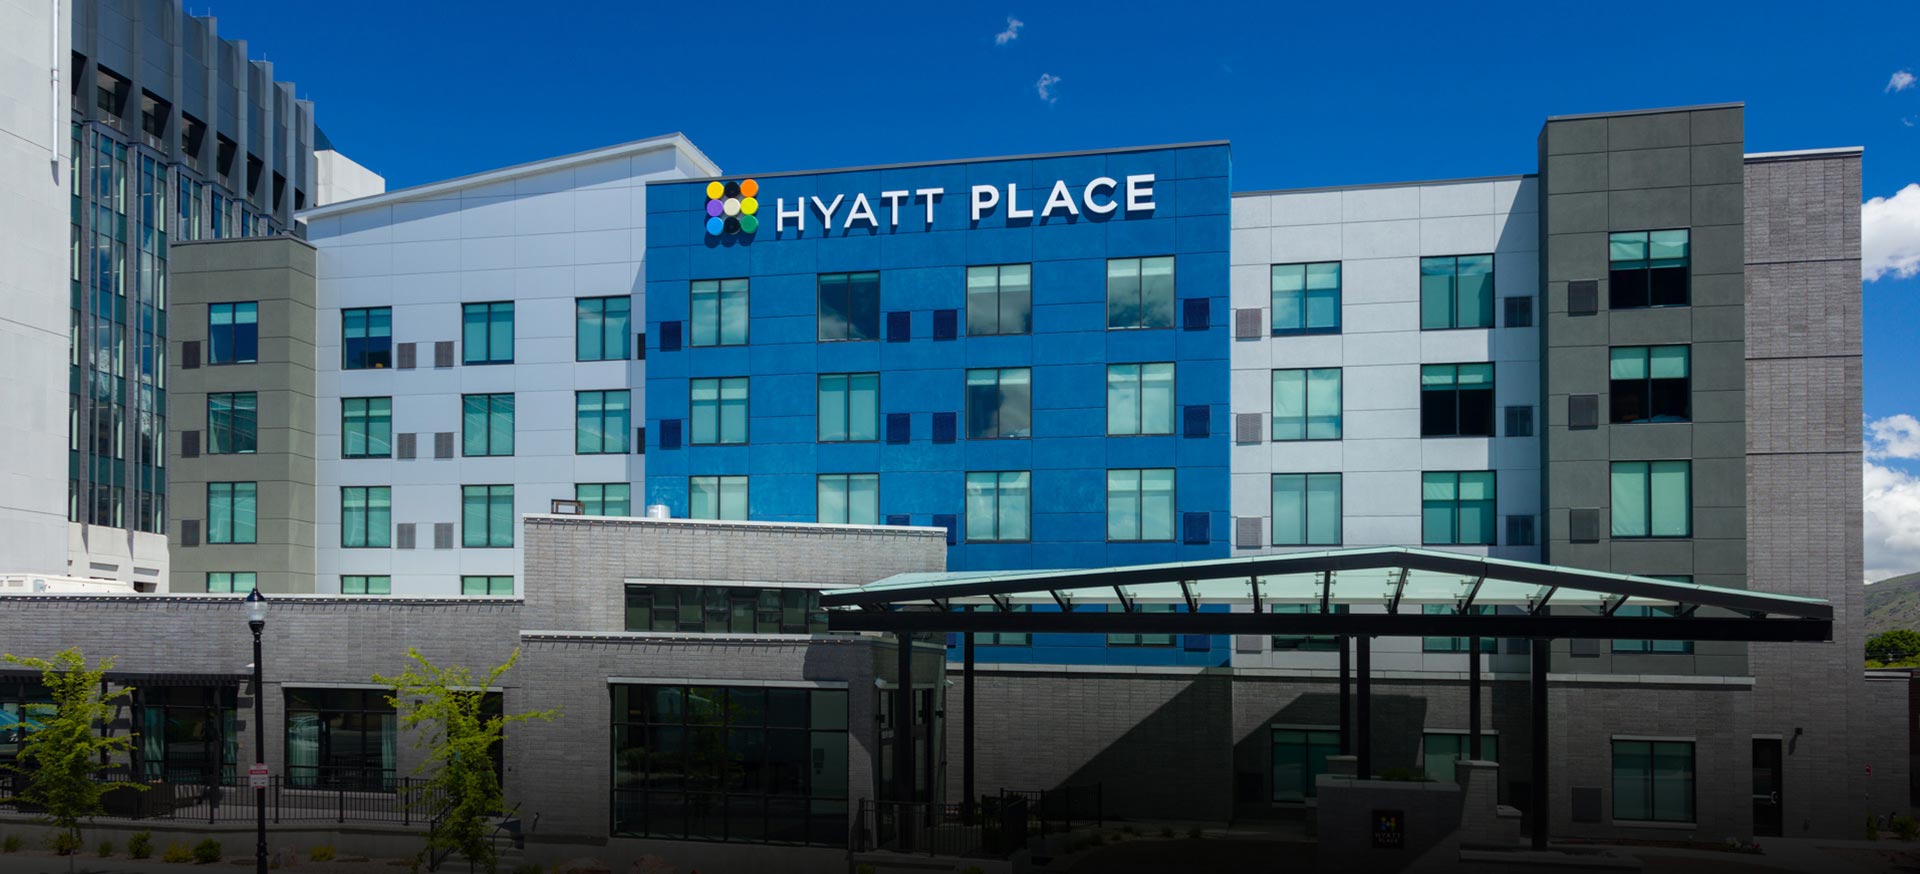 Hyatt-Place-Hote-Hero-1